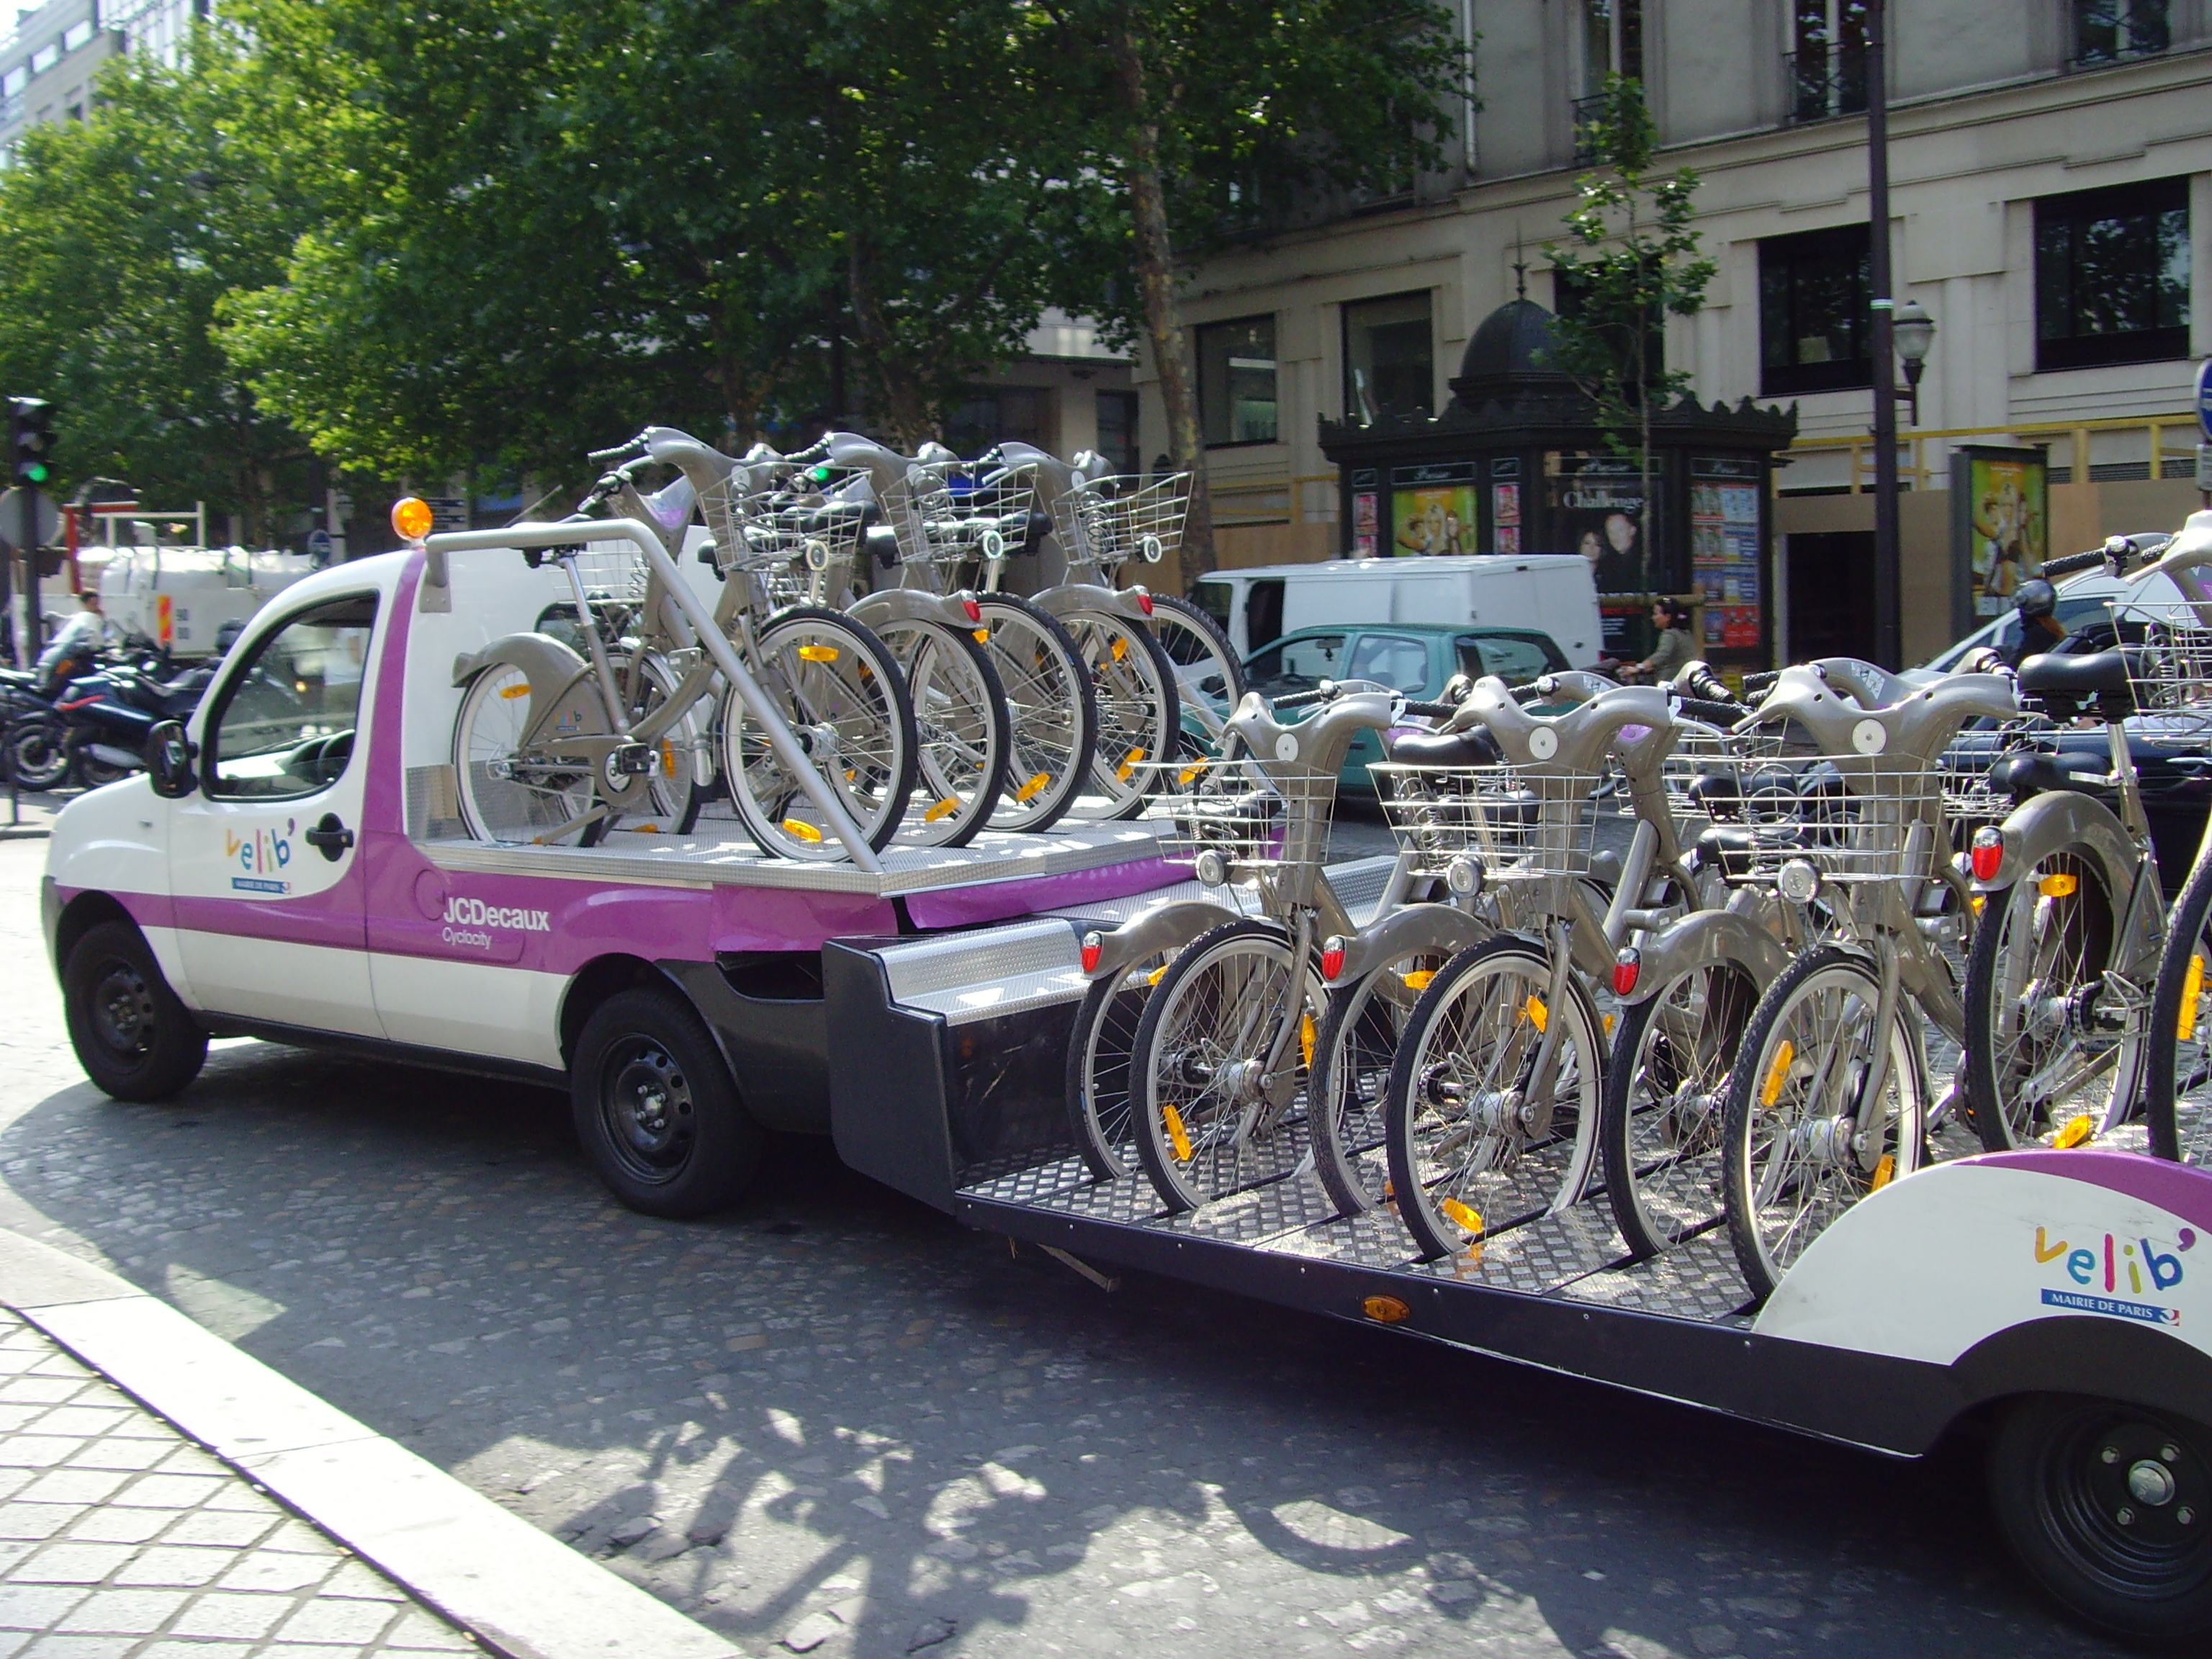 Velib bike share system, Paris, France